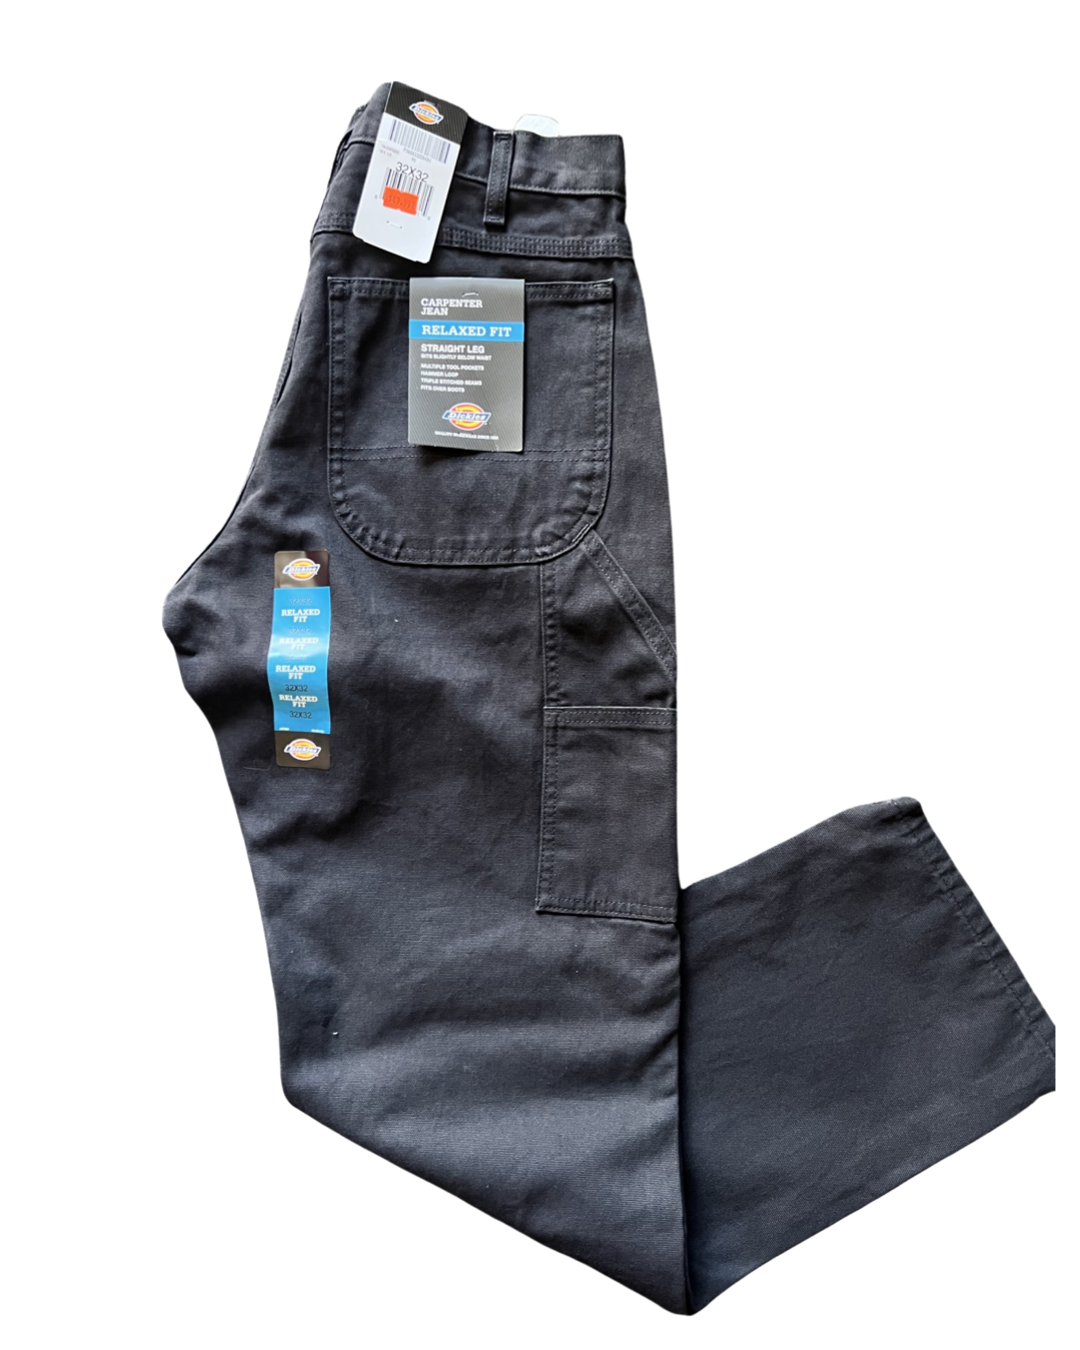 Dickies Men's Carpenter Pants Relaxed Fit, 8-9 Pocket Straight Leg Denim  Jeans | eBay